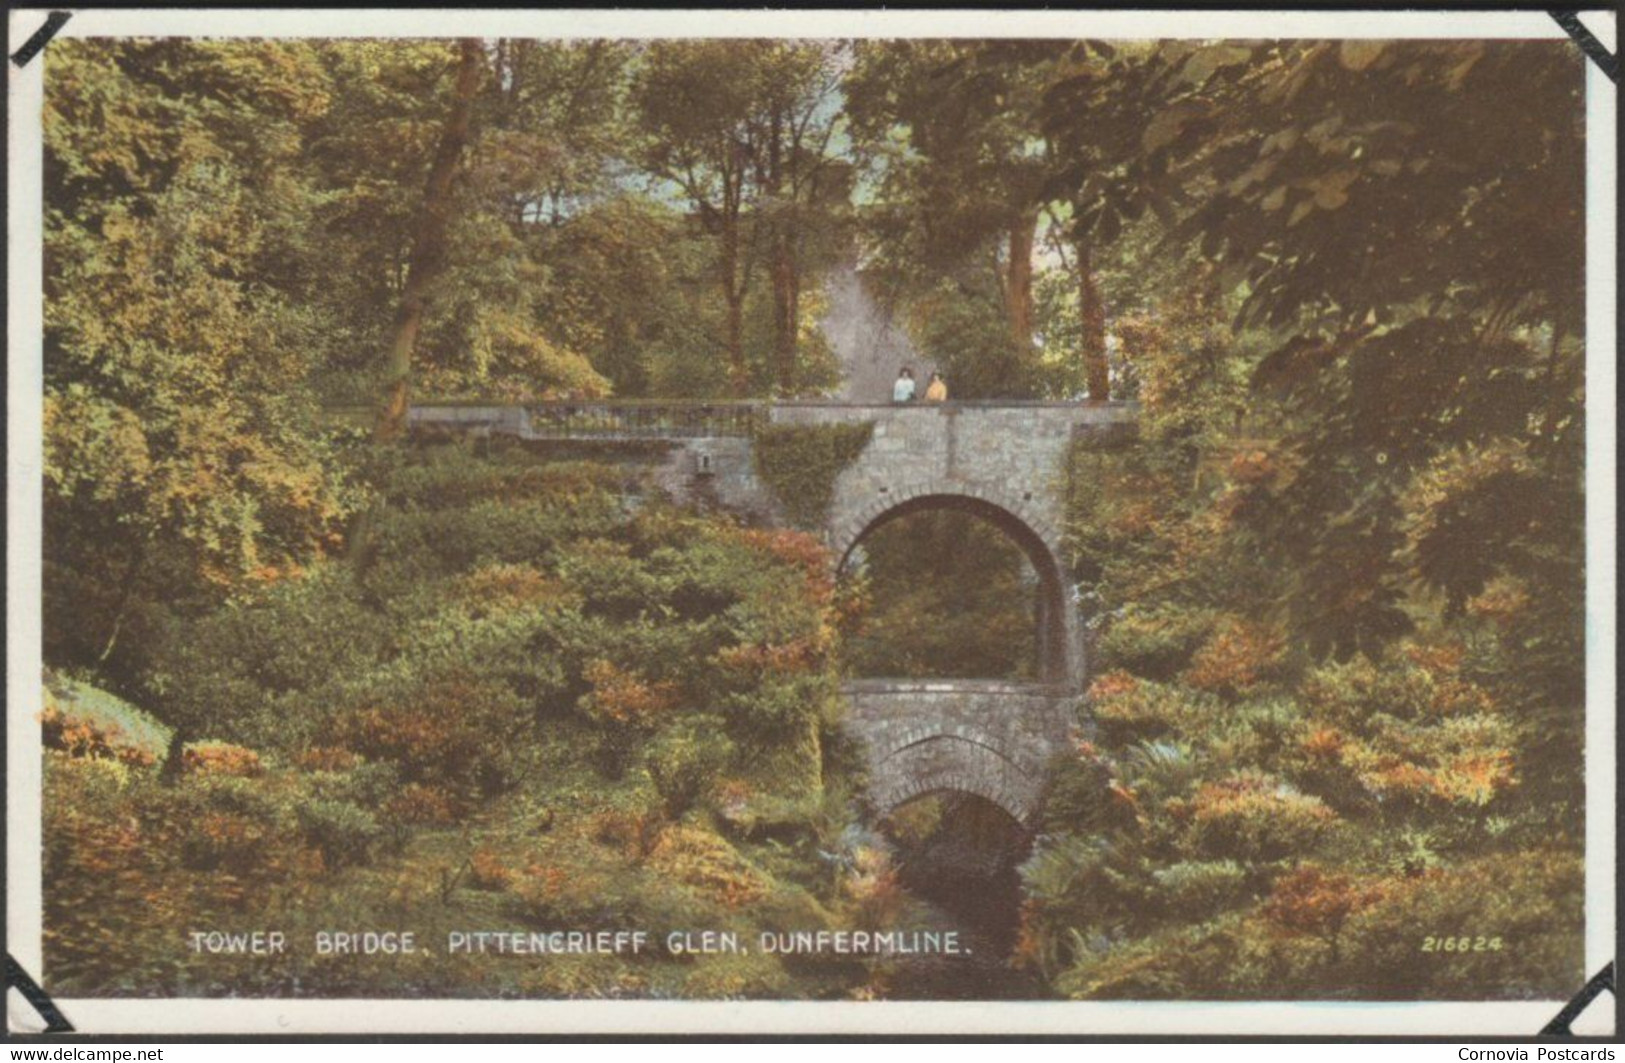 Tower Bridge, Pittencrieff Glen, Dunfermline, C.1940 - Valentine's Postcard - Fife